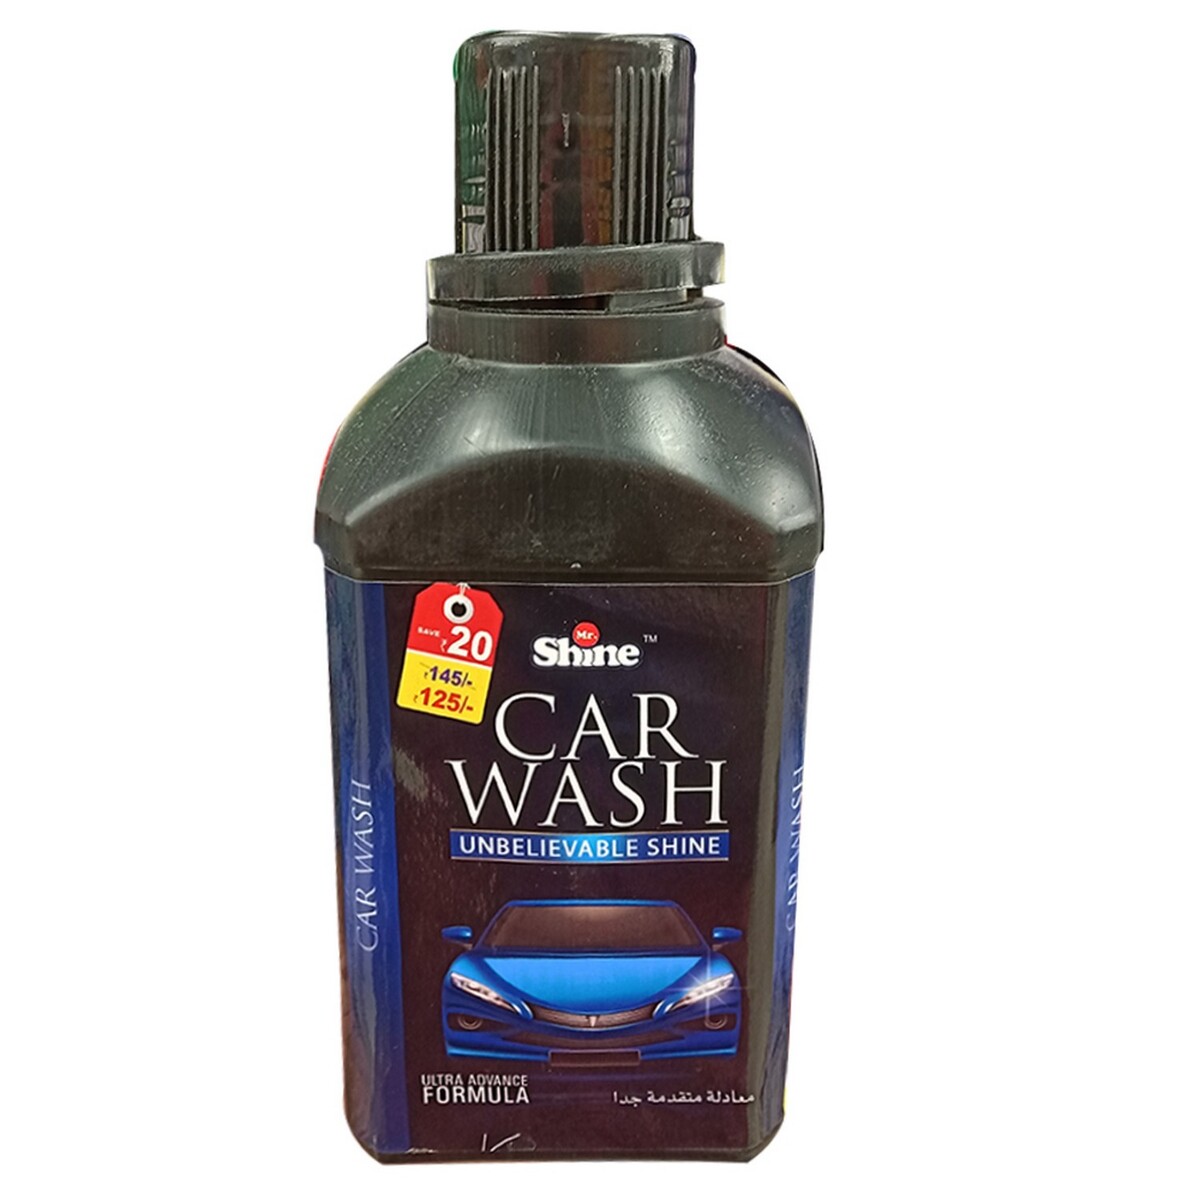 Mr Shine Car Wash 500g